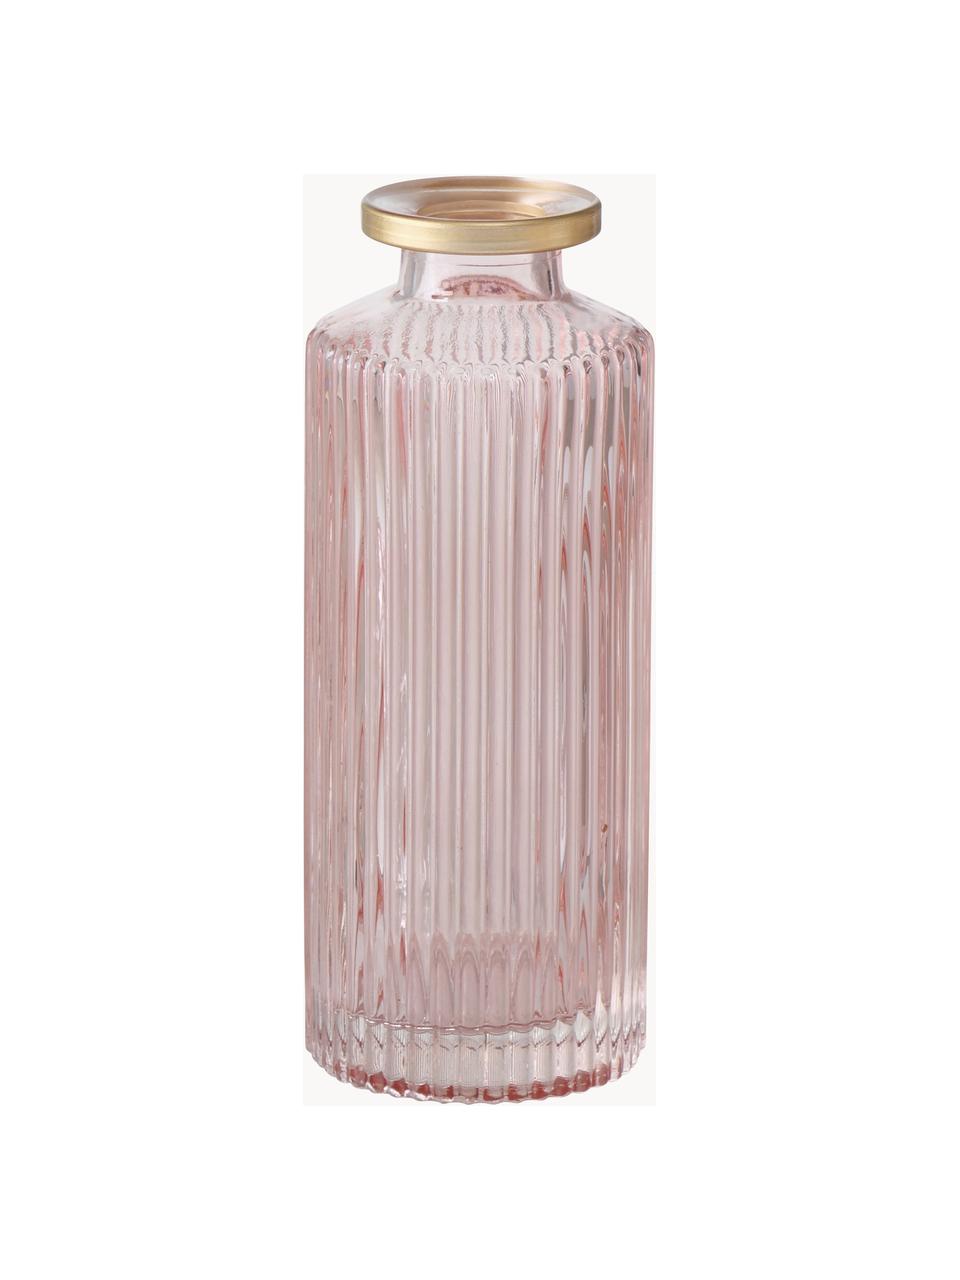 Petits vases en verre Adore, 3 élém., Verre, coloré, Rose pâle, transparent, argenté, Ø 5 x haut. 13 cm